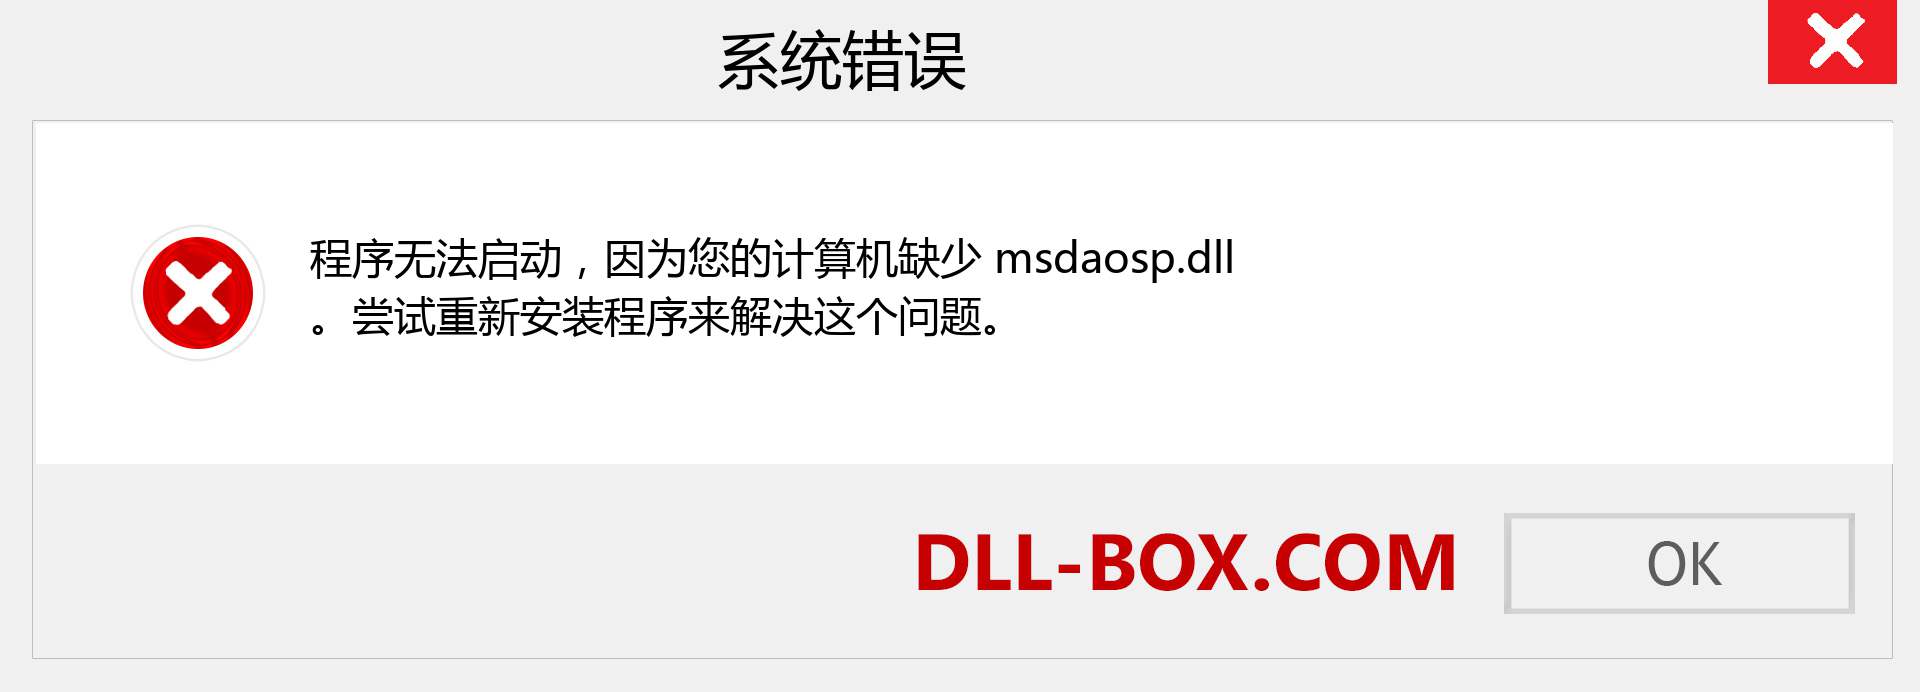 msdaosp.dll 文件丢失？。 适用于 Windows 7、8、10 的下载 - 修复 Windows、照片、图像上的 msdaosp dll 丢失错误